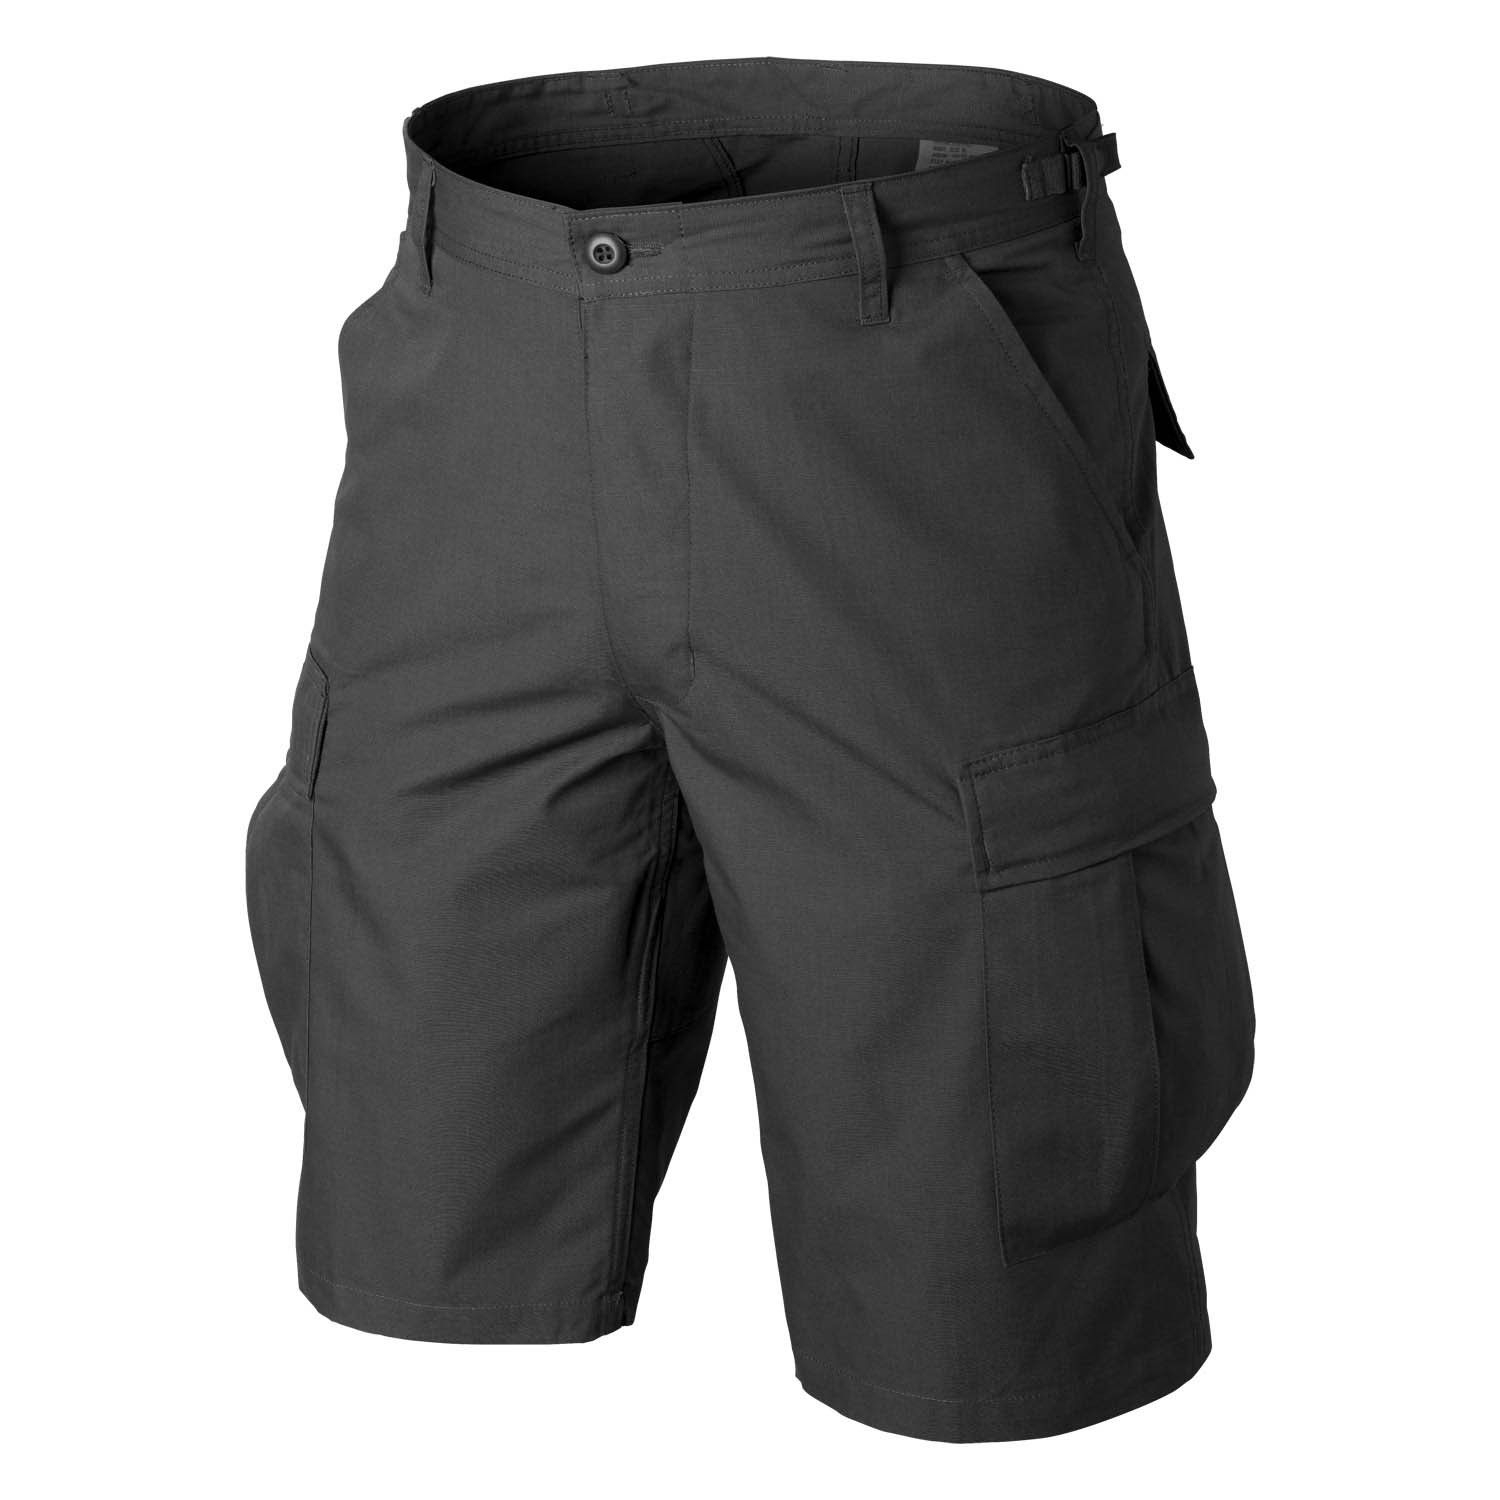 Image of krótkie spodnie bdu - polycotton ripstop - czarne - xs (sp-bdk-pr-01-b02)